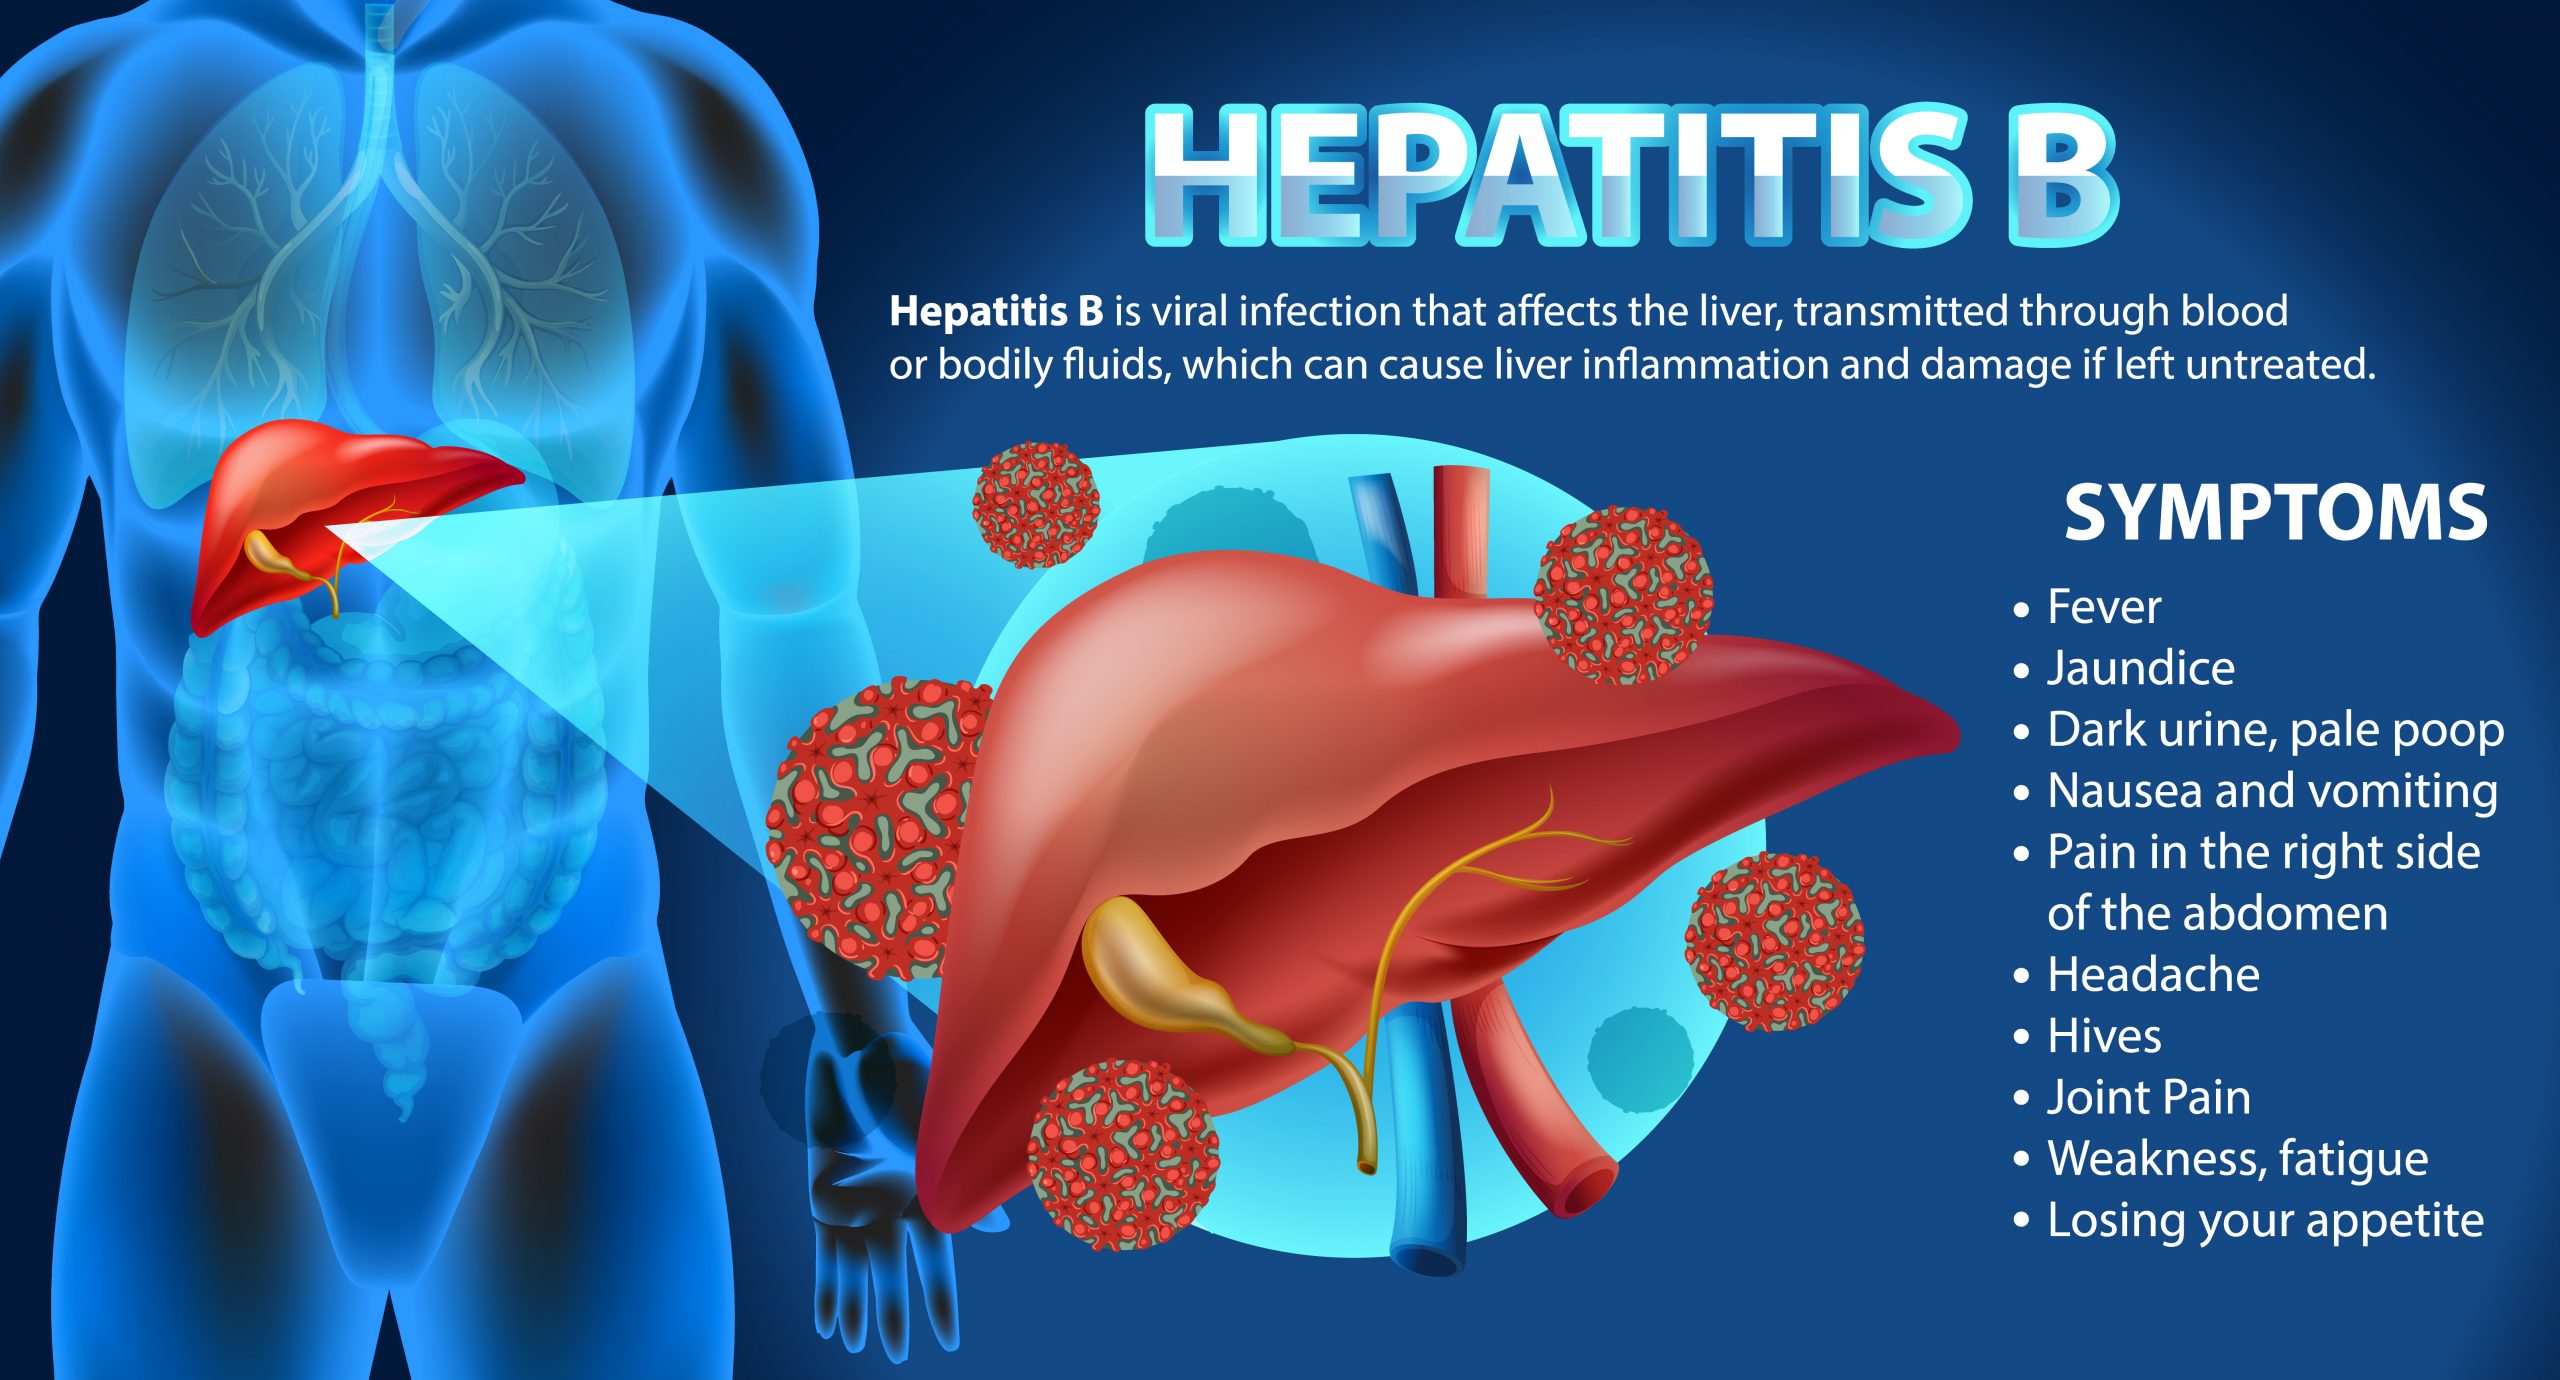 Symptoms of Hepatitis B Infographic